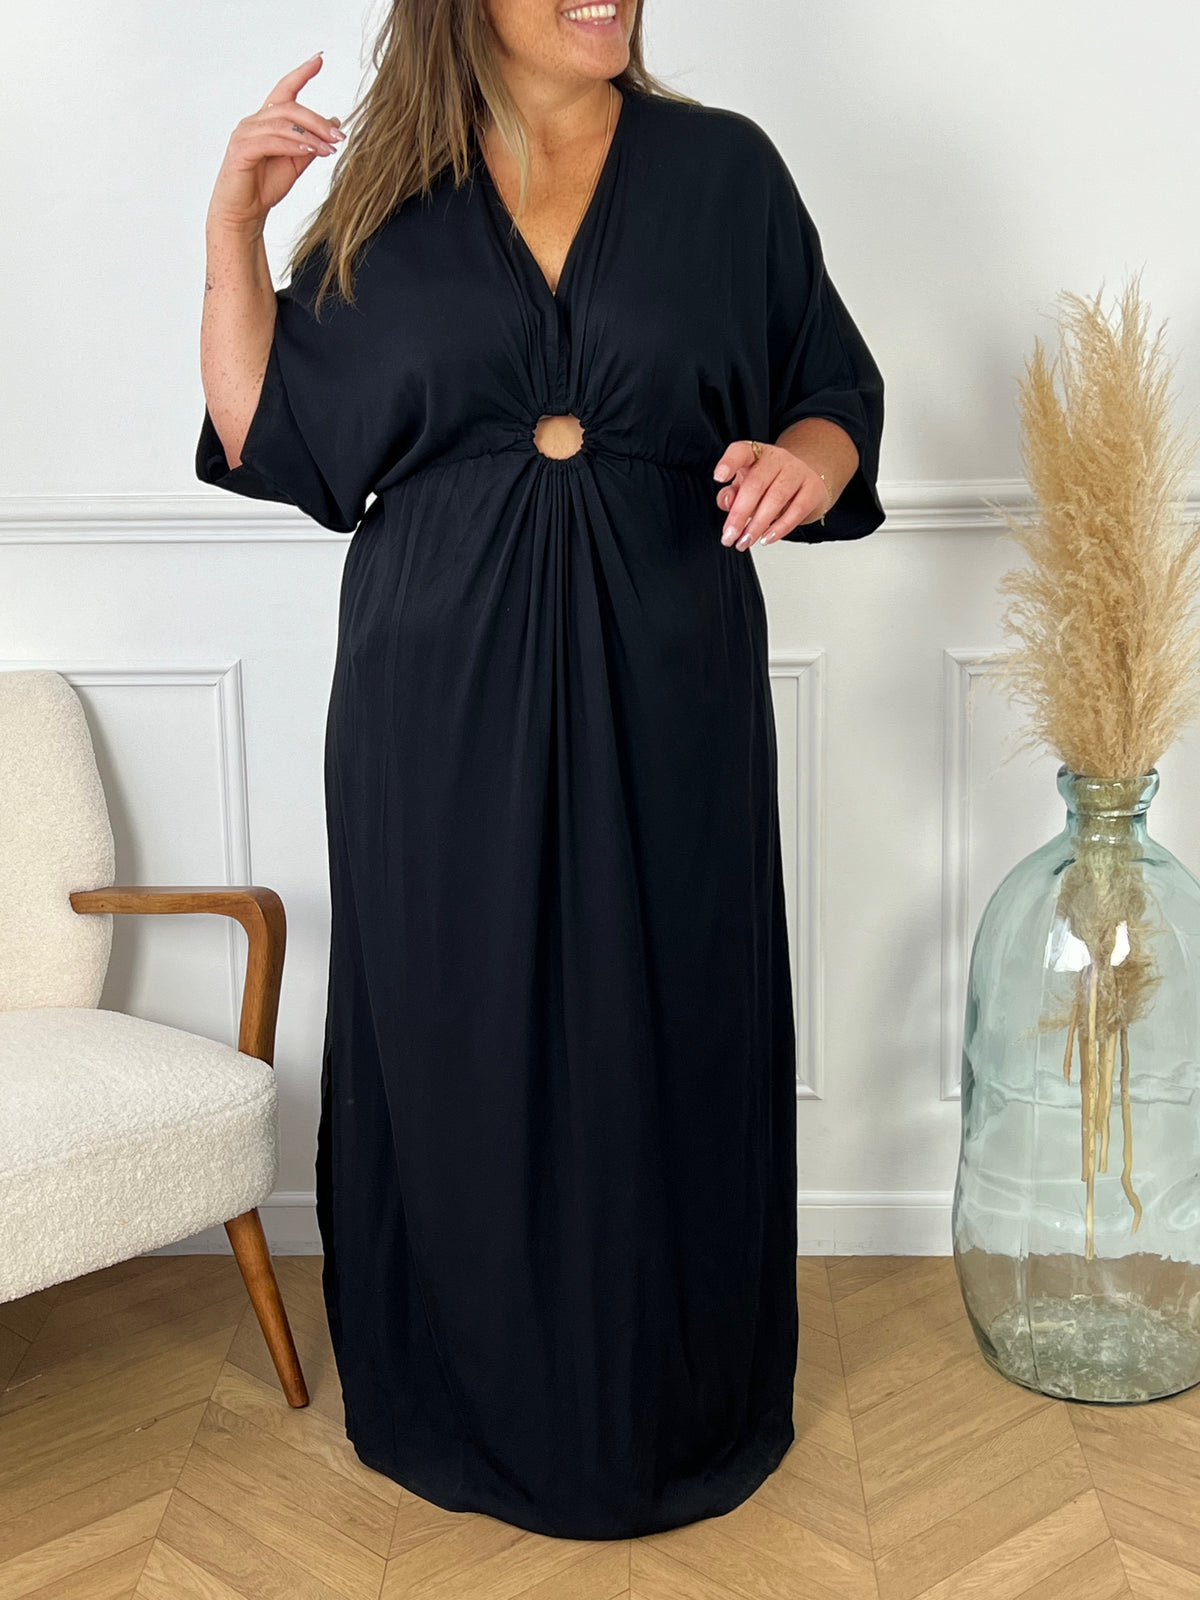 La robe Alwena noire est la pièce parfaite pour toutes les occasions. Avec son col V flatteur et sa coupe ample, elle s'adapte à toutes les tailles. Son élasticité à la taille offre confort et élégance, tandis que sa couleur noire intemporelle apporte une touche de fluidité à votre garde-robe.